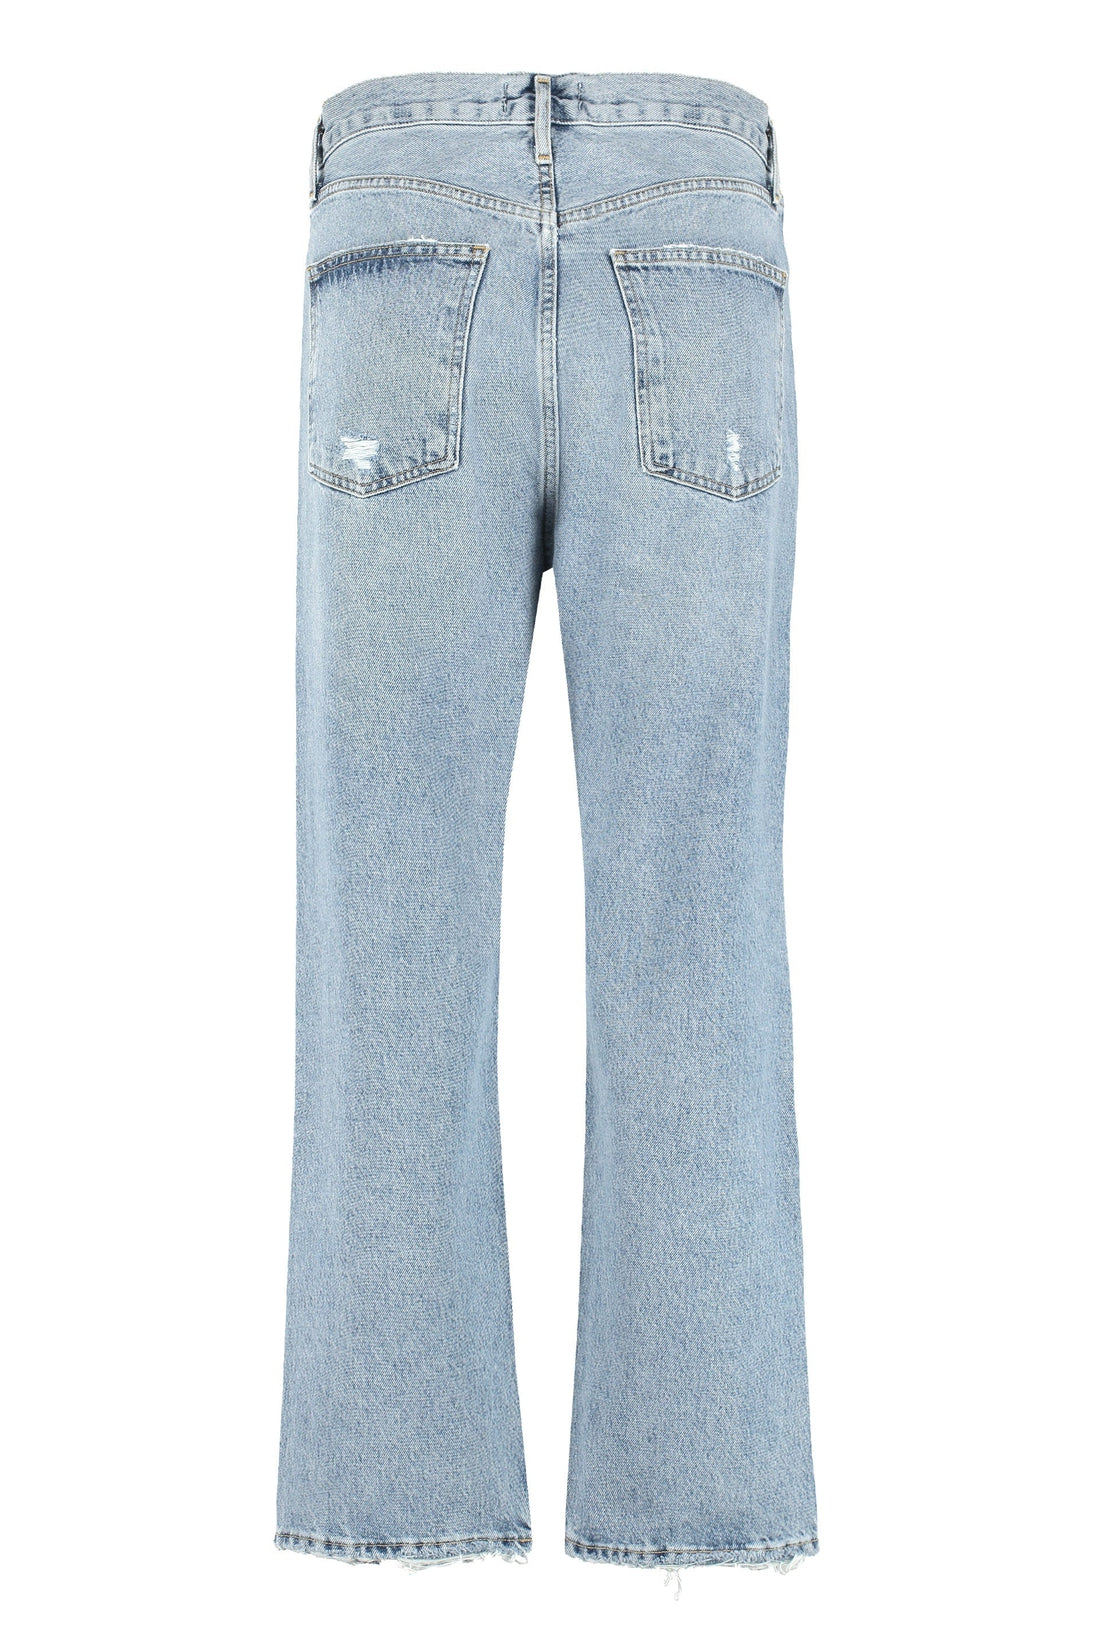 AGOLDE-OUTLET-SALE-Straight leg jeans 90'S Crop-ARCHIVIST